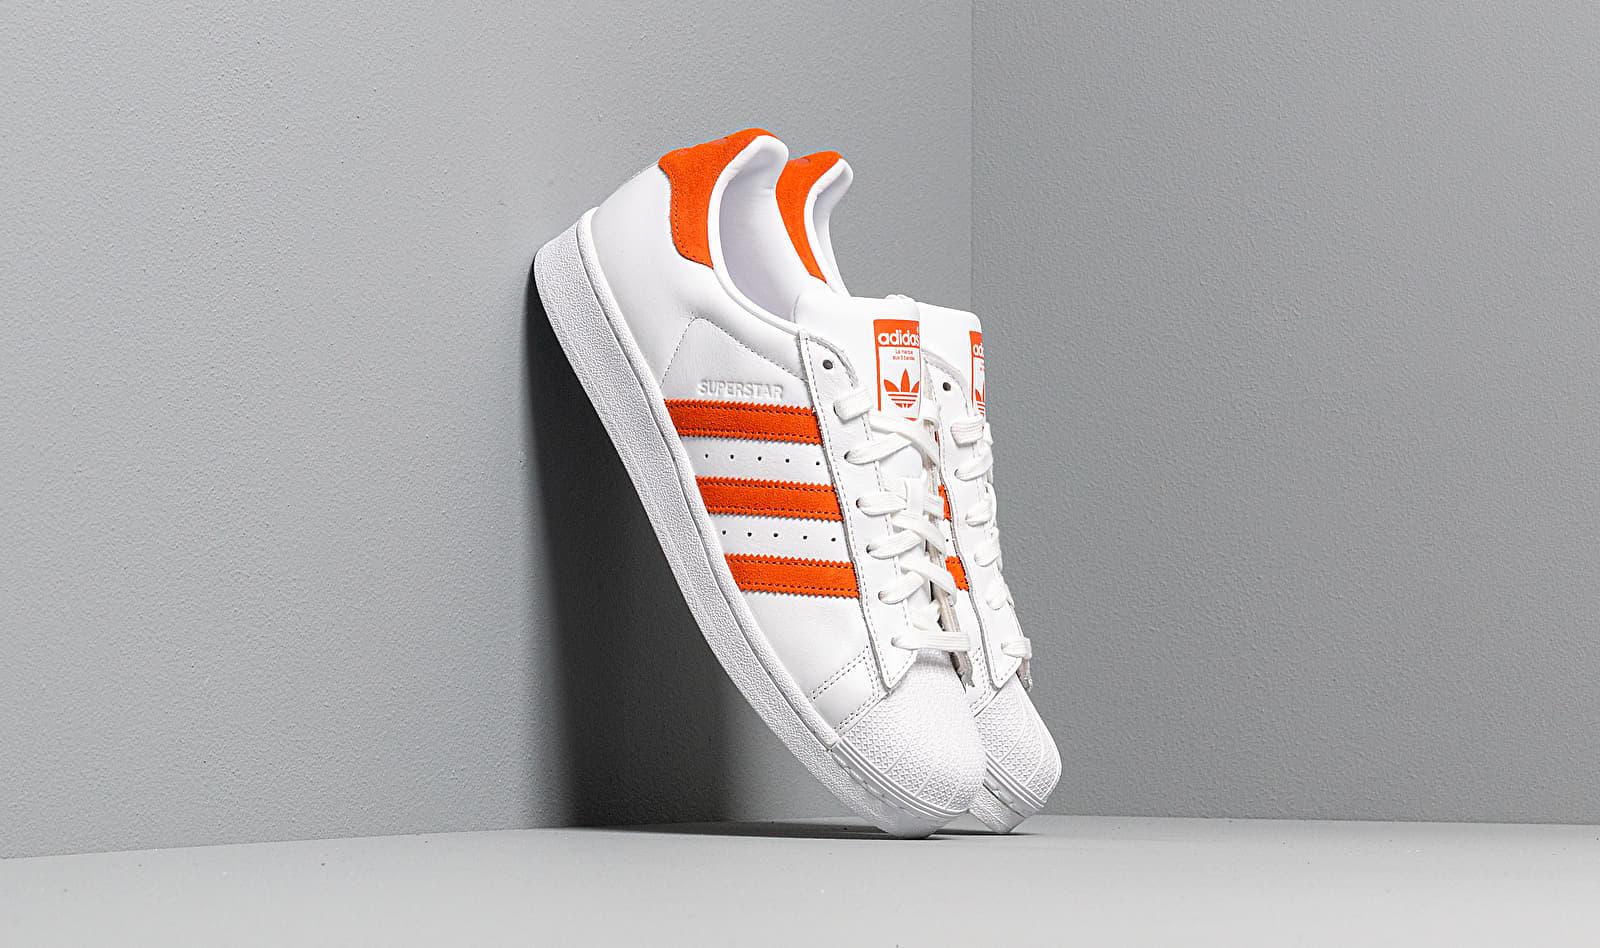 Lyst | Men White for Orange/ White/ Originals Adidas Superstar Ftw adidas Ftw